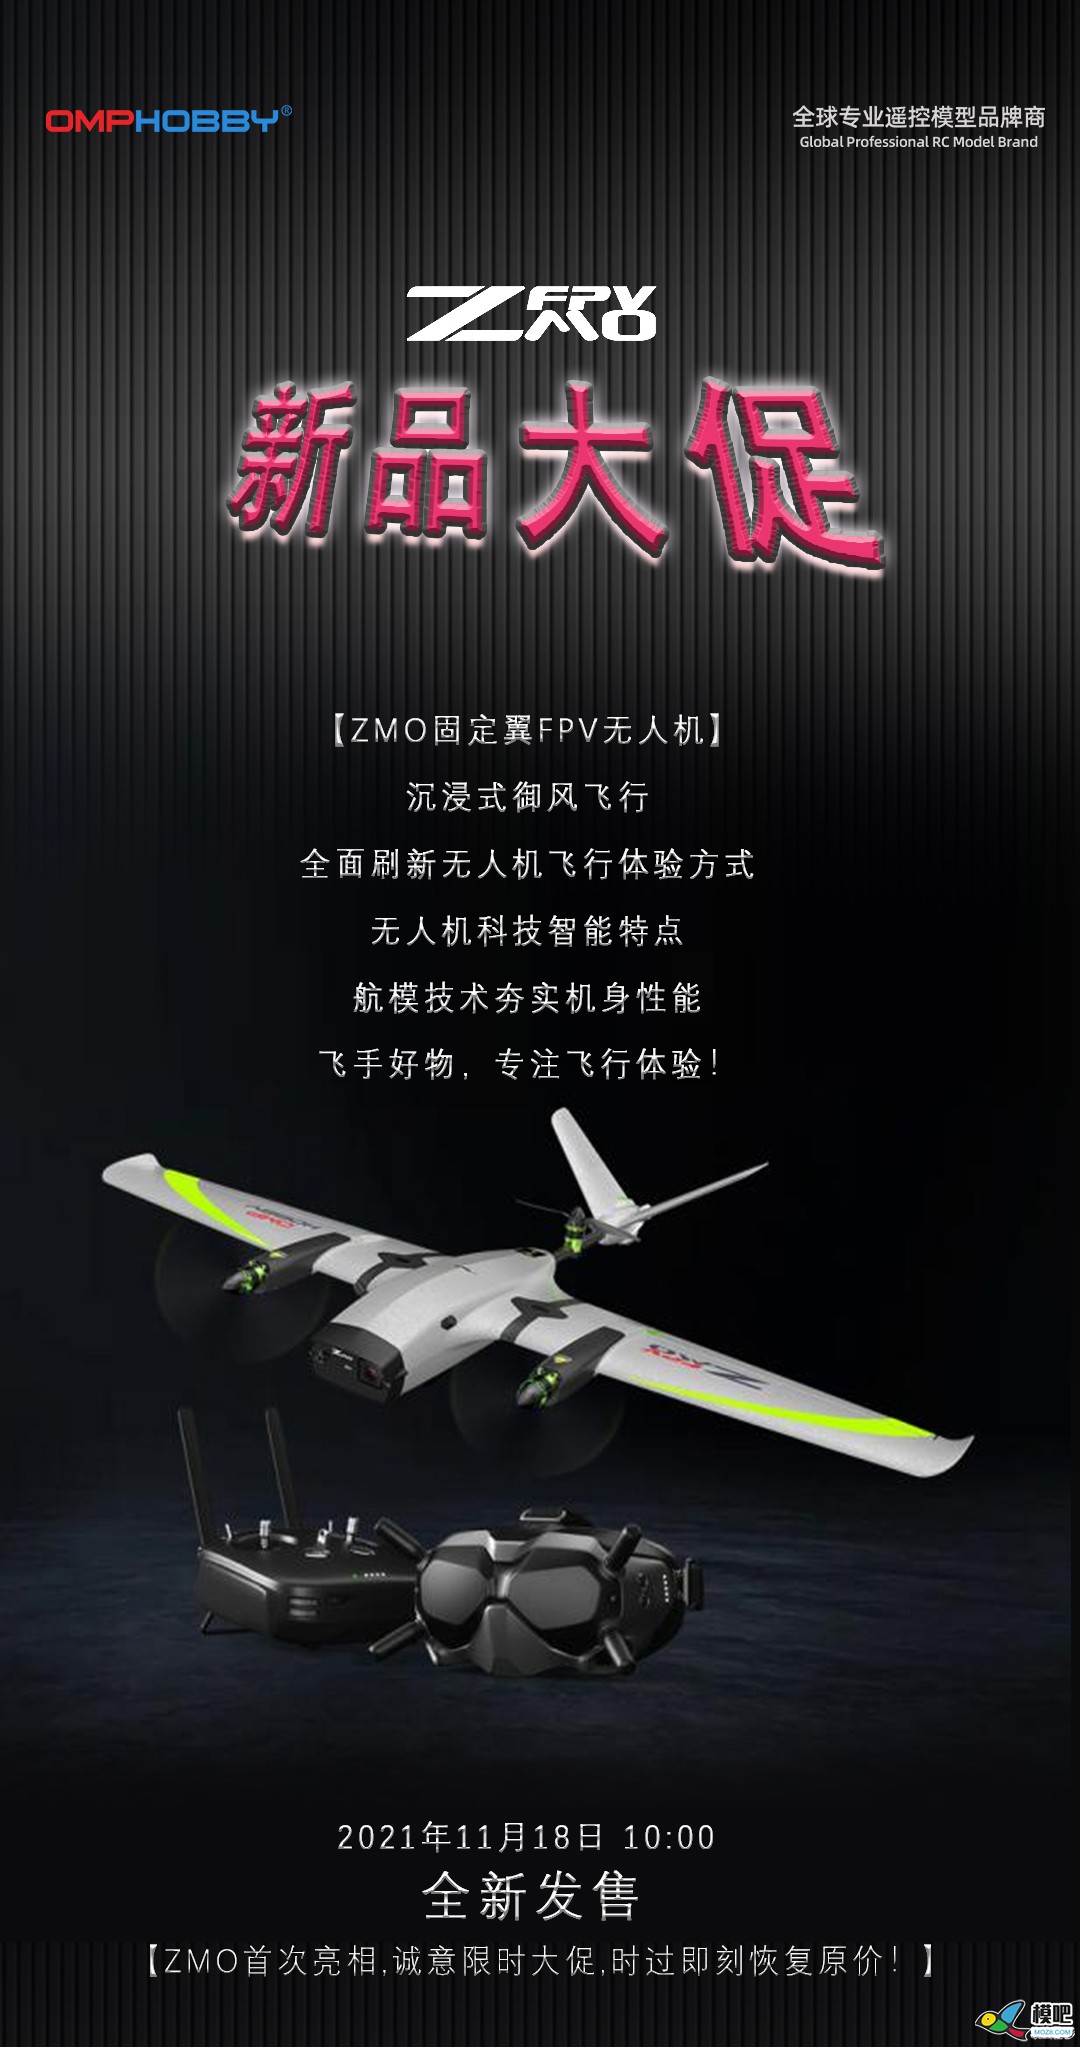 潮玩无人机-垂起固定翼FPV【ZMO】| 全新发售 无人机,航模,固定翼,飞手,飞行体验 作者:边锋领域 743 